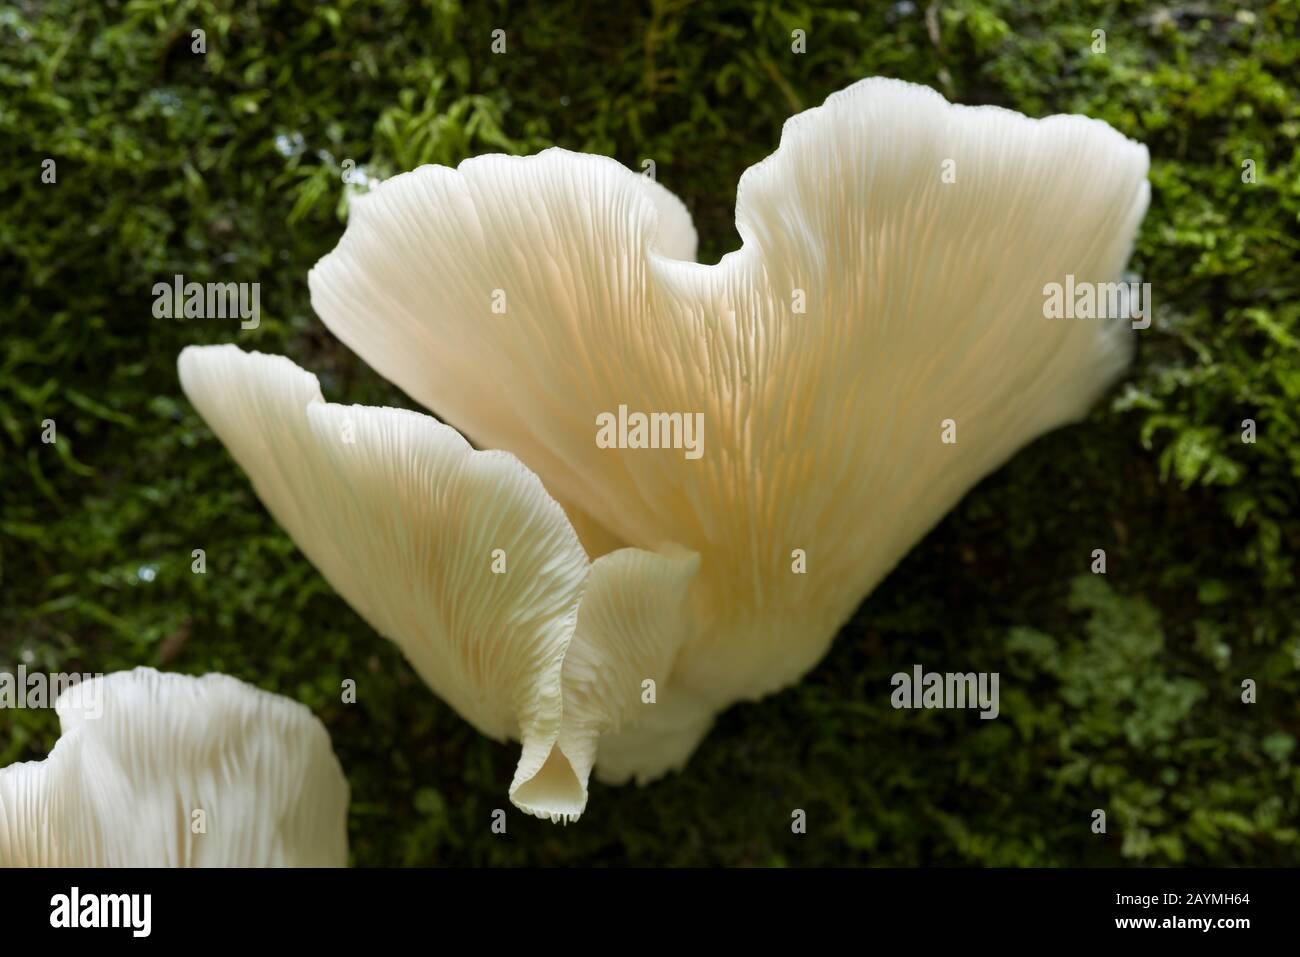 Funghi di ramificazione Oyster (Pleurotus cornucopiae) su un albero caduto. Foto Stock